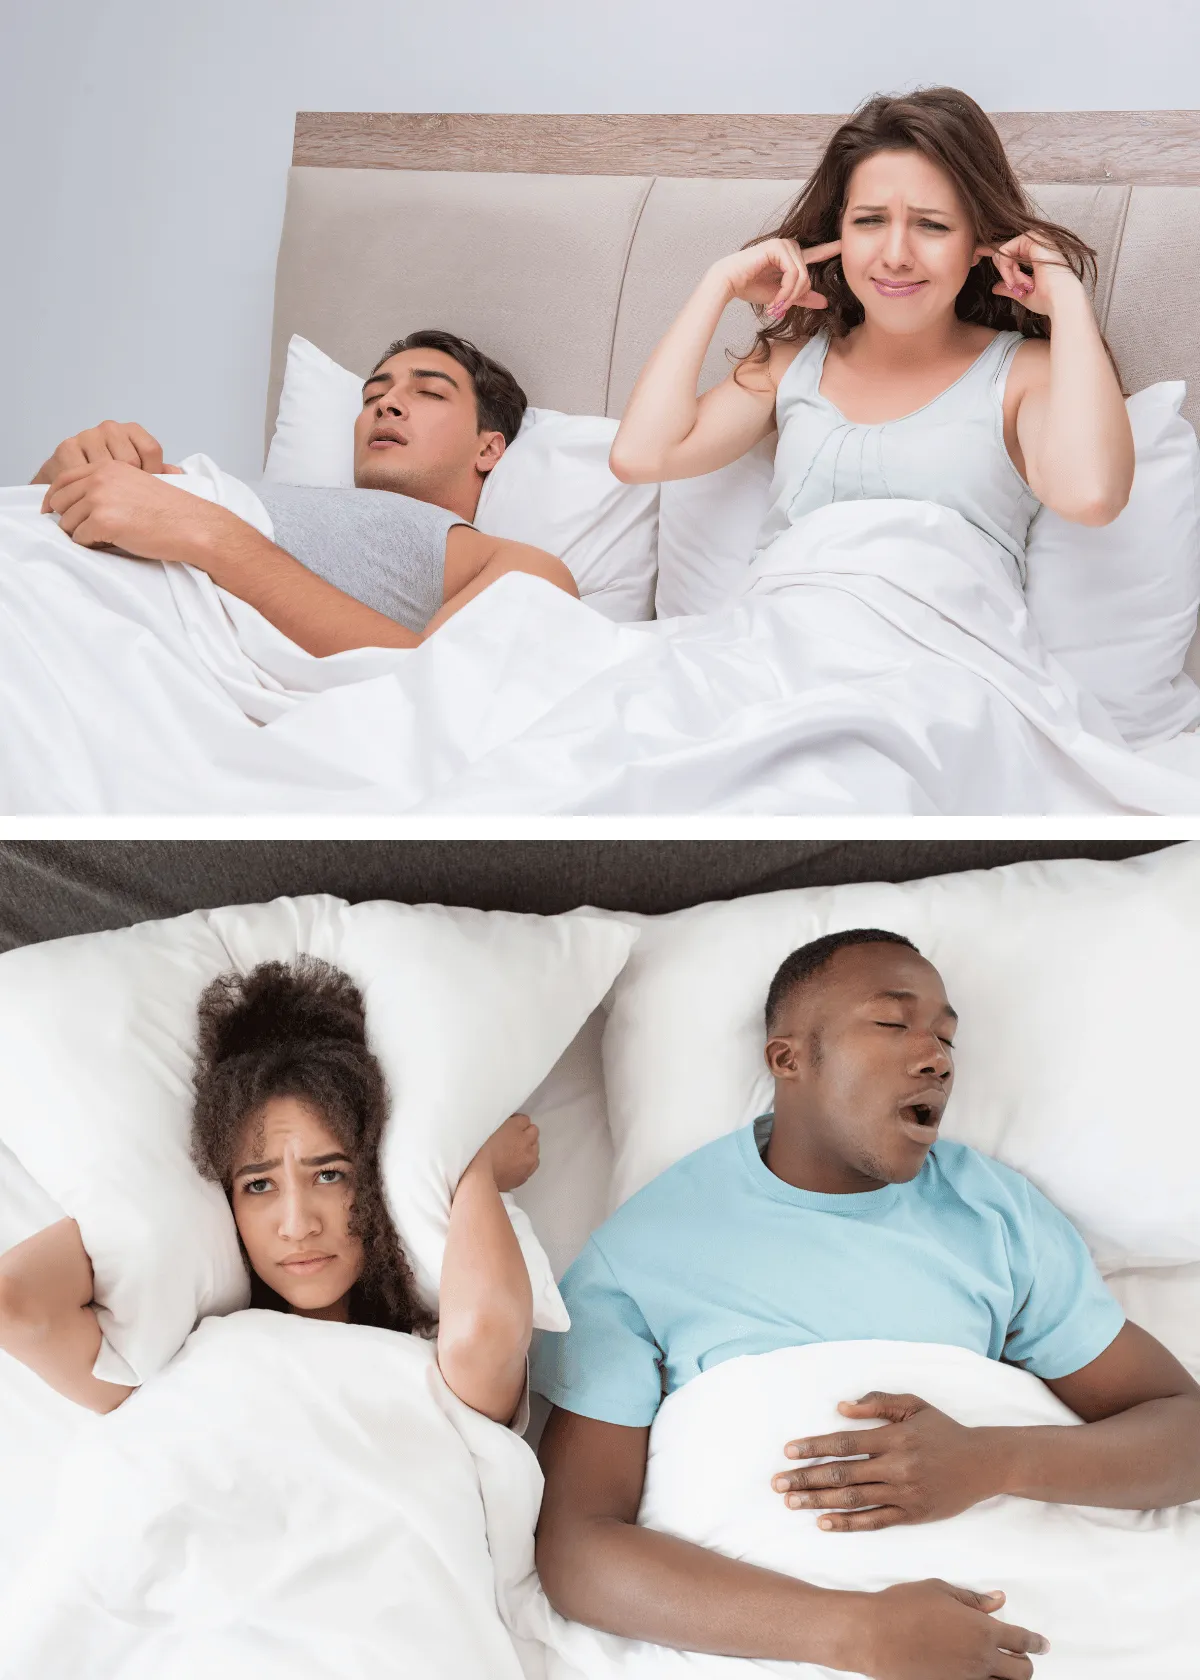 "How Untreated Sleep Apnea Impacts Life Expectancy"